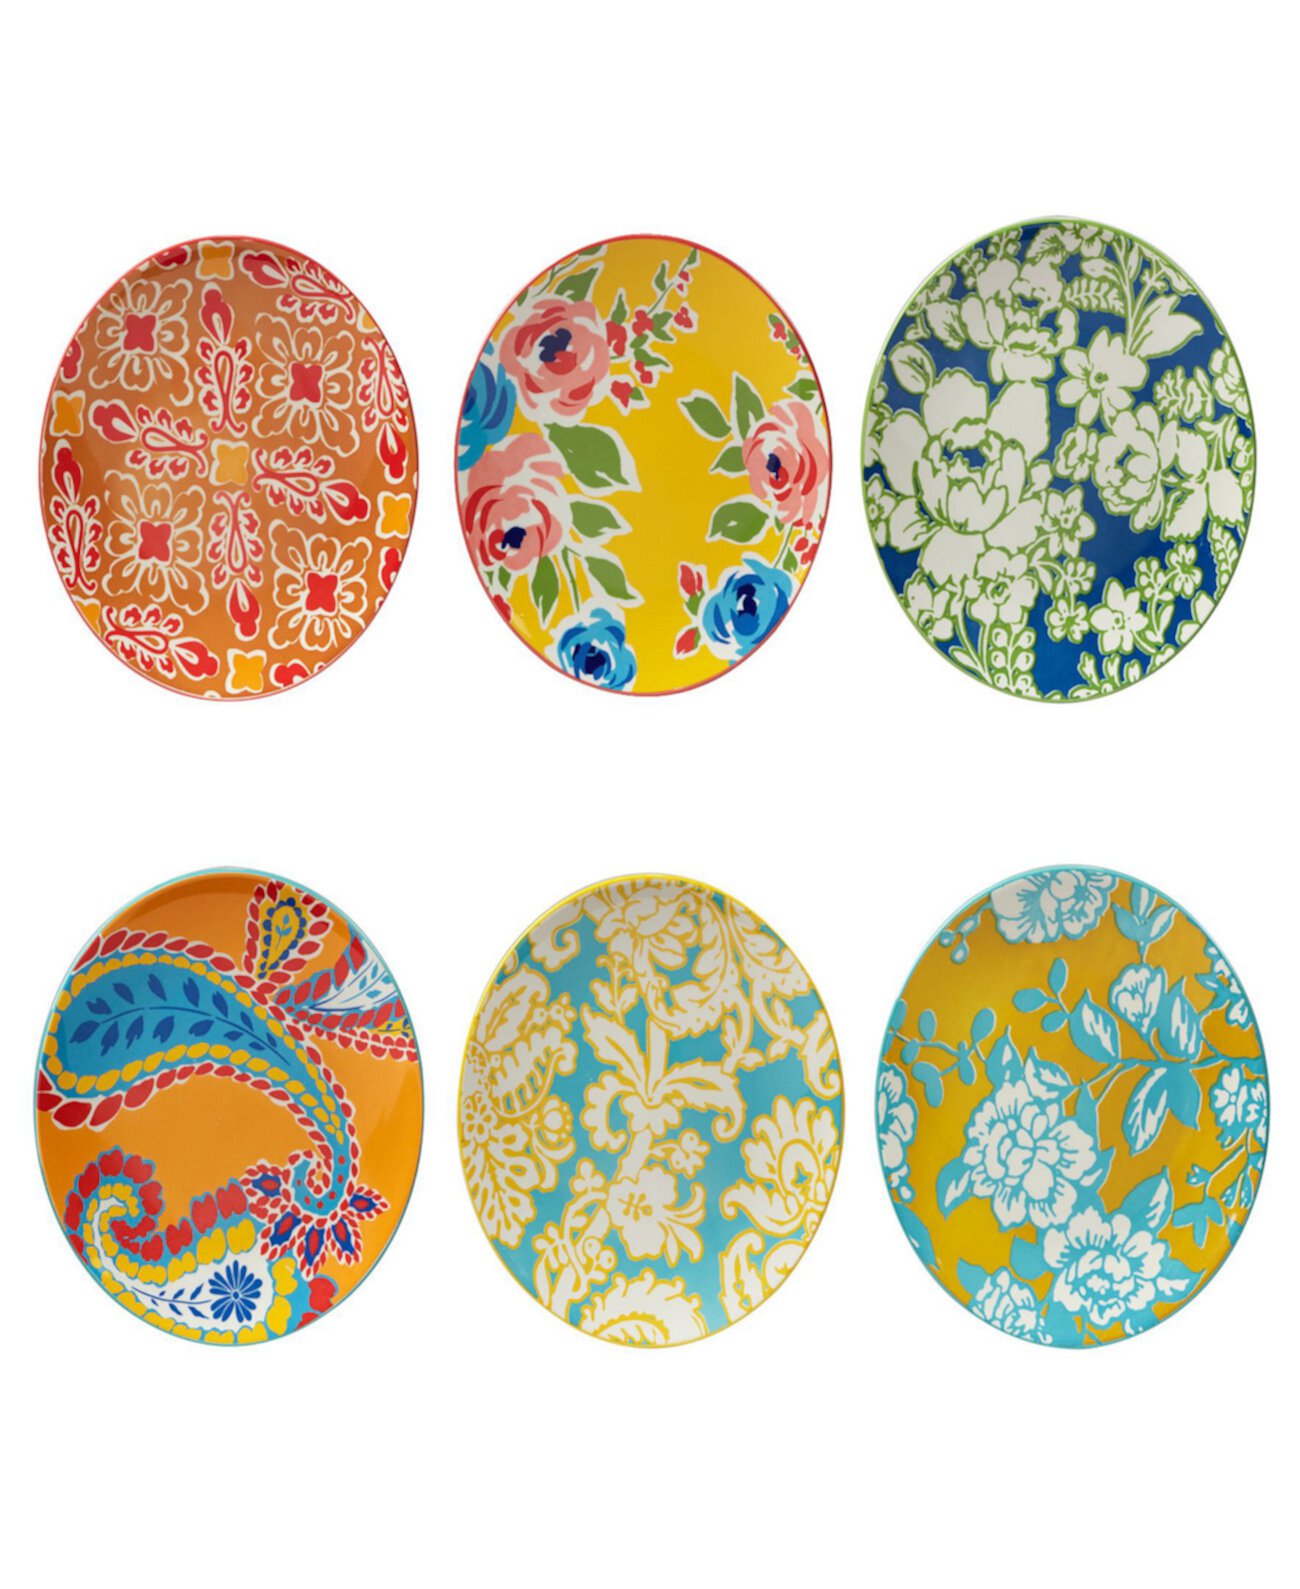 Дамасский цветочный набор из 6 салатных тарелок Certified International